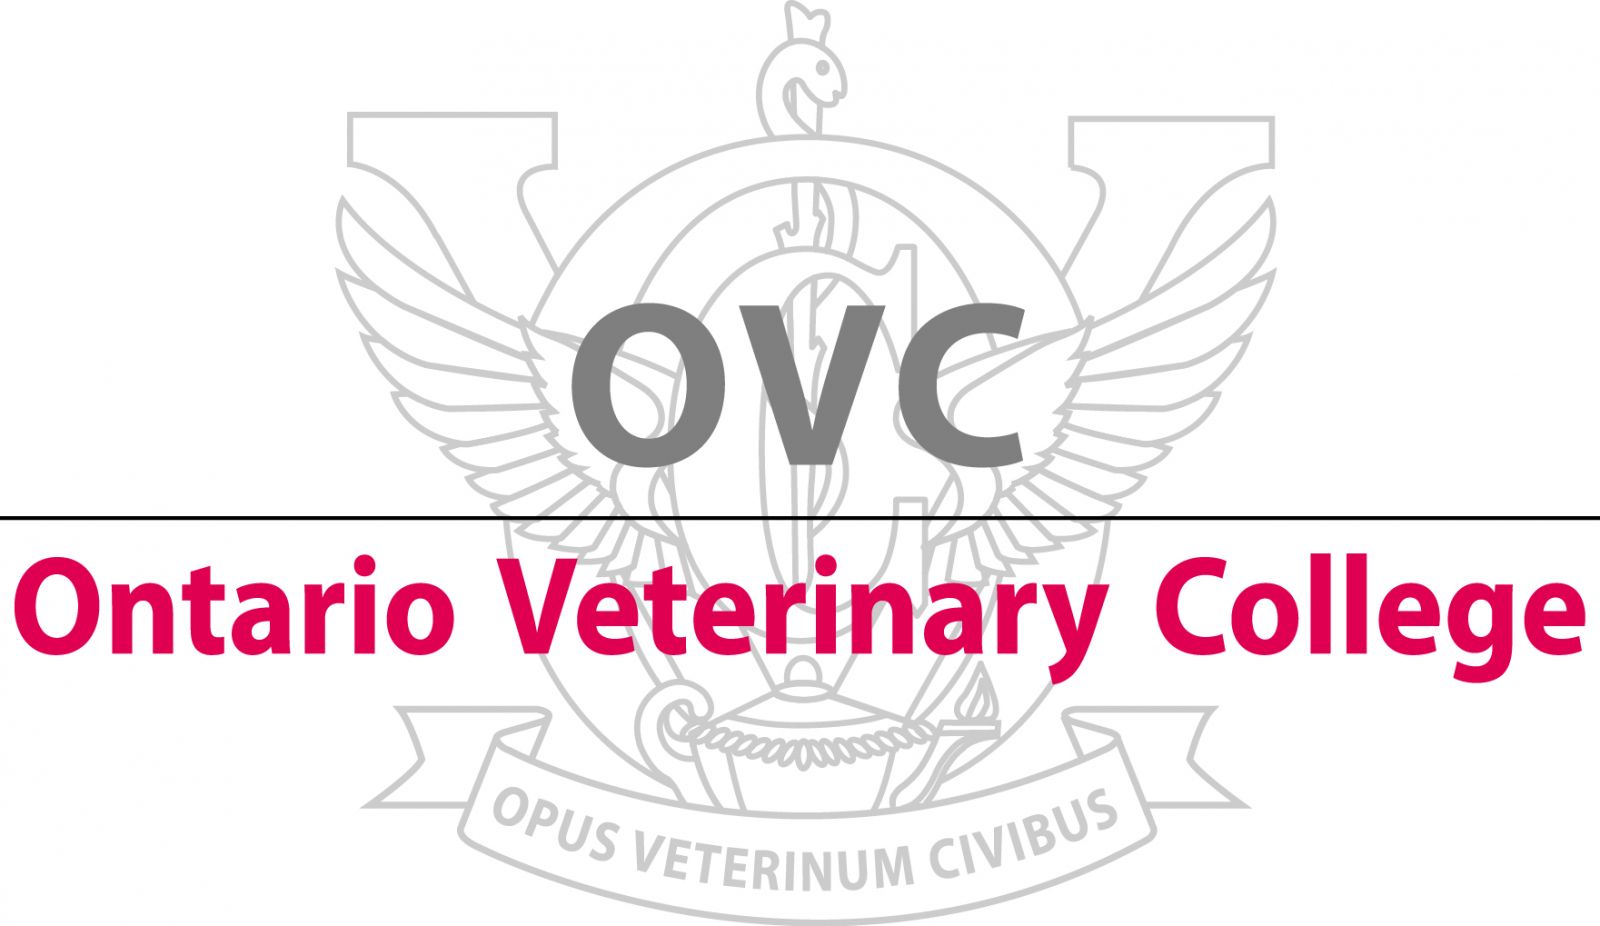 Ontario Veterinary College (OVC) crest logo.